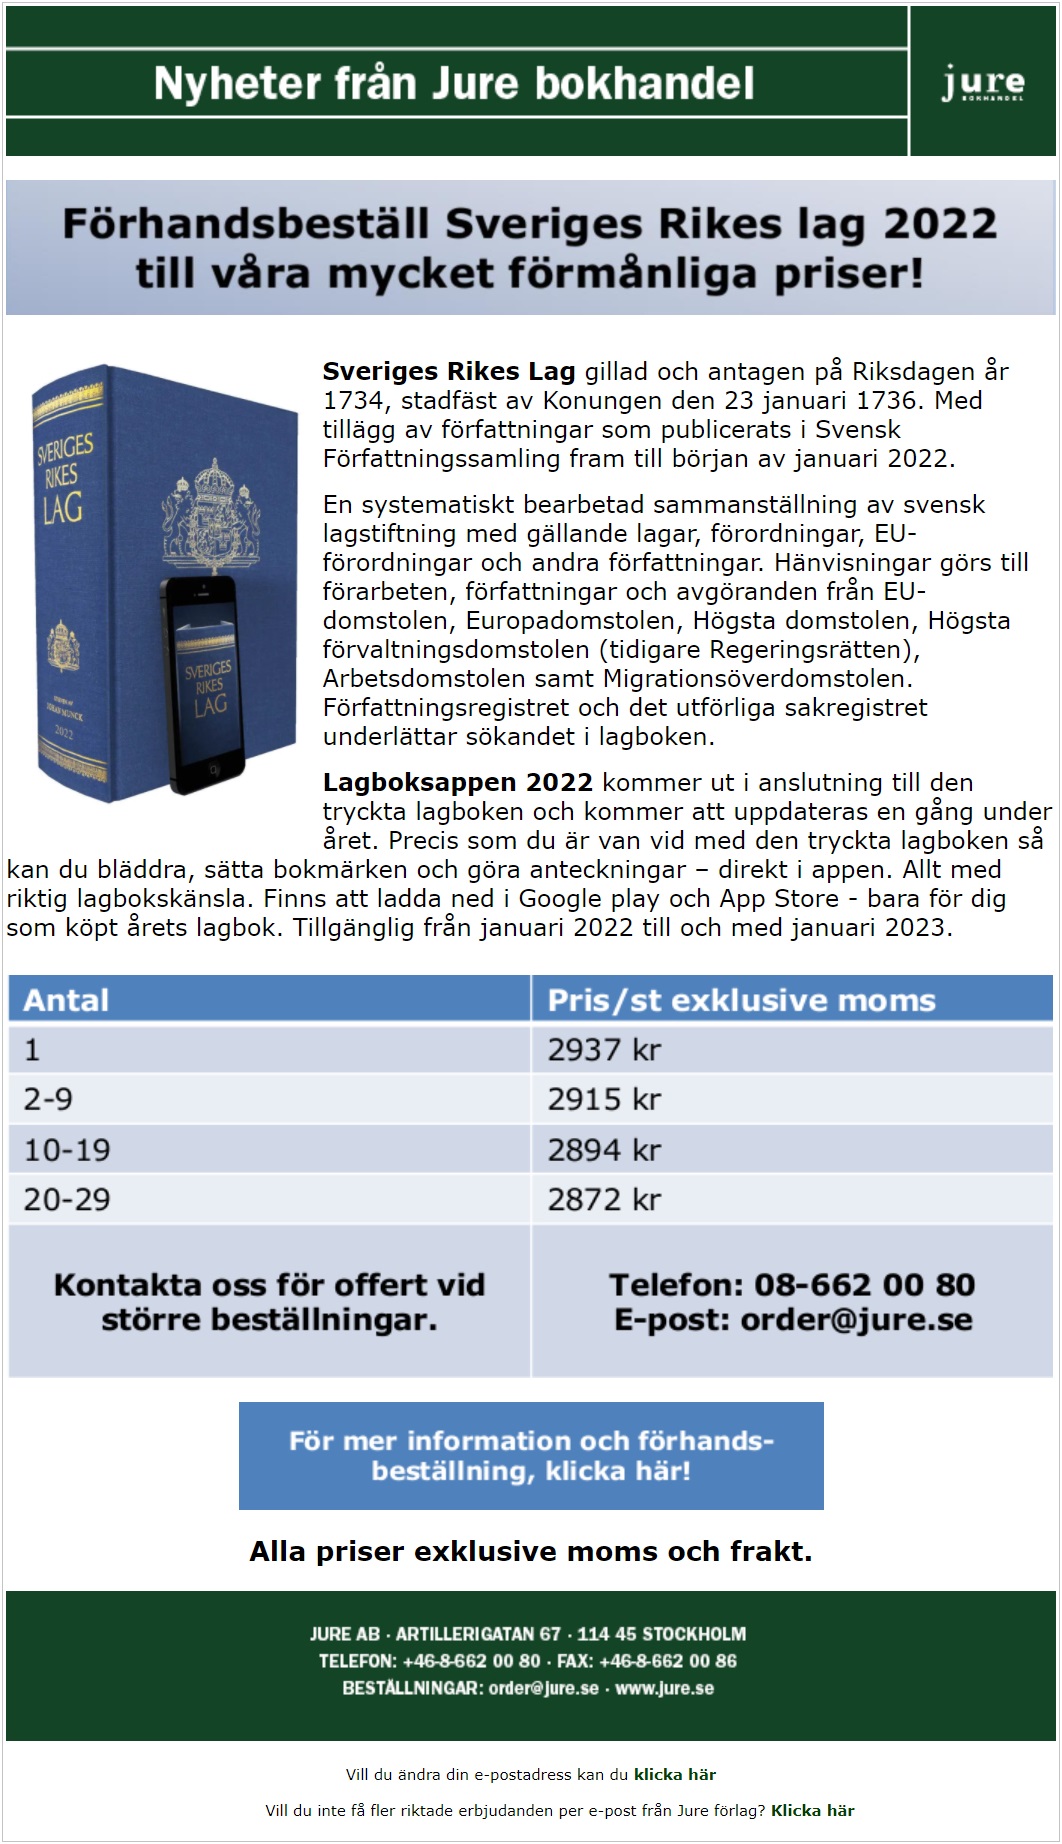 Nyhetsbrev - Jure bokhandel - Sveriges Rikes Lag